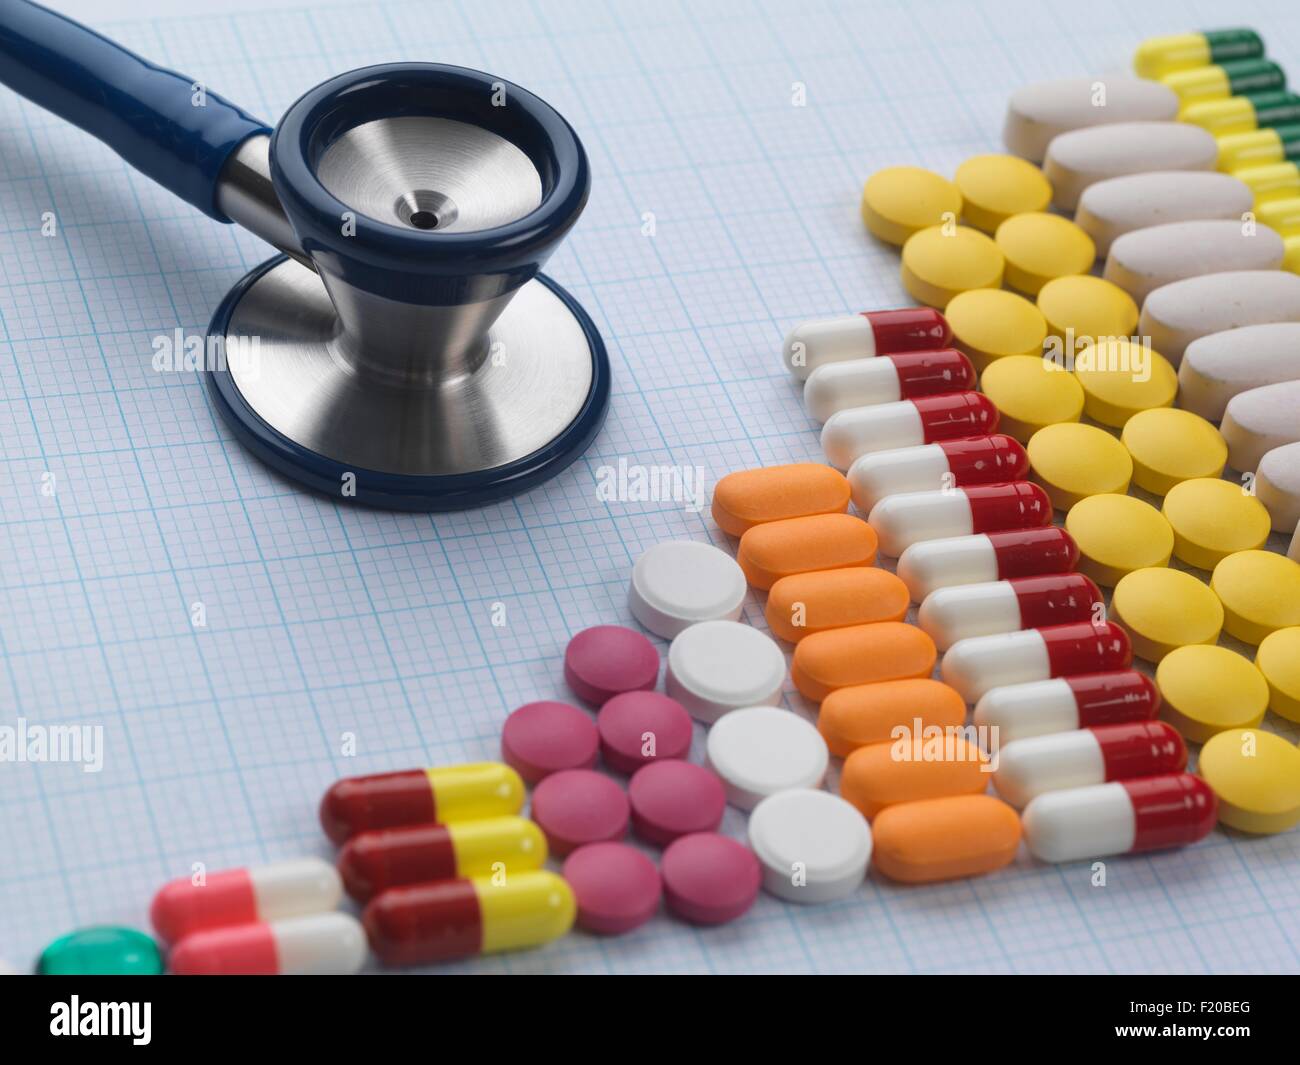 Vielzahl von Medizin und Stethoskop auf Zeichenpapier mit Maßeinteilung zur Erhöhung der medizinischen Drogenkonsum zu veranschaulichen Stockfoto